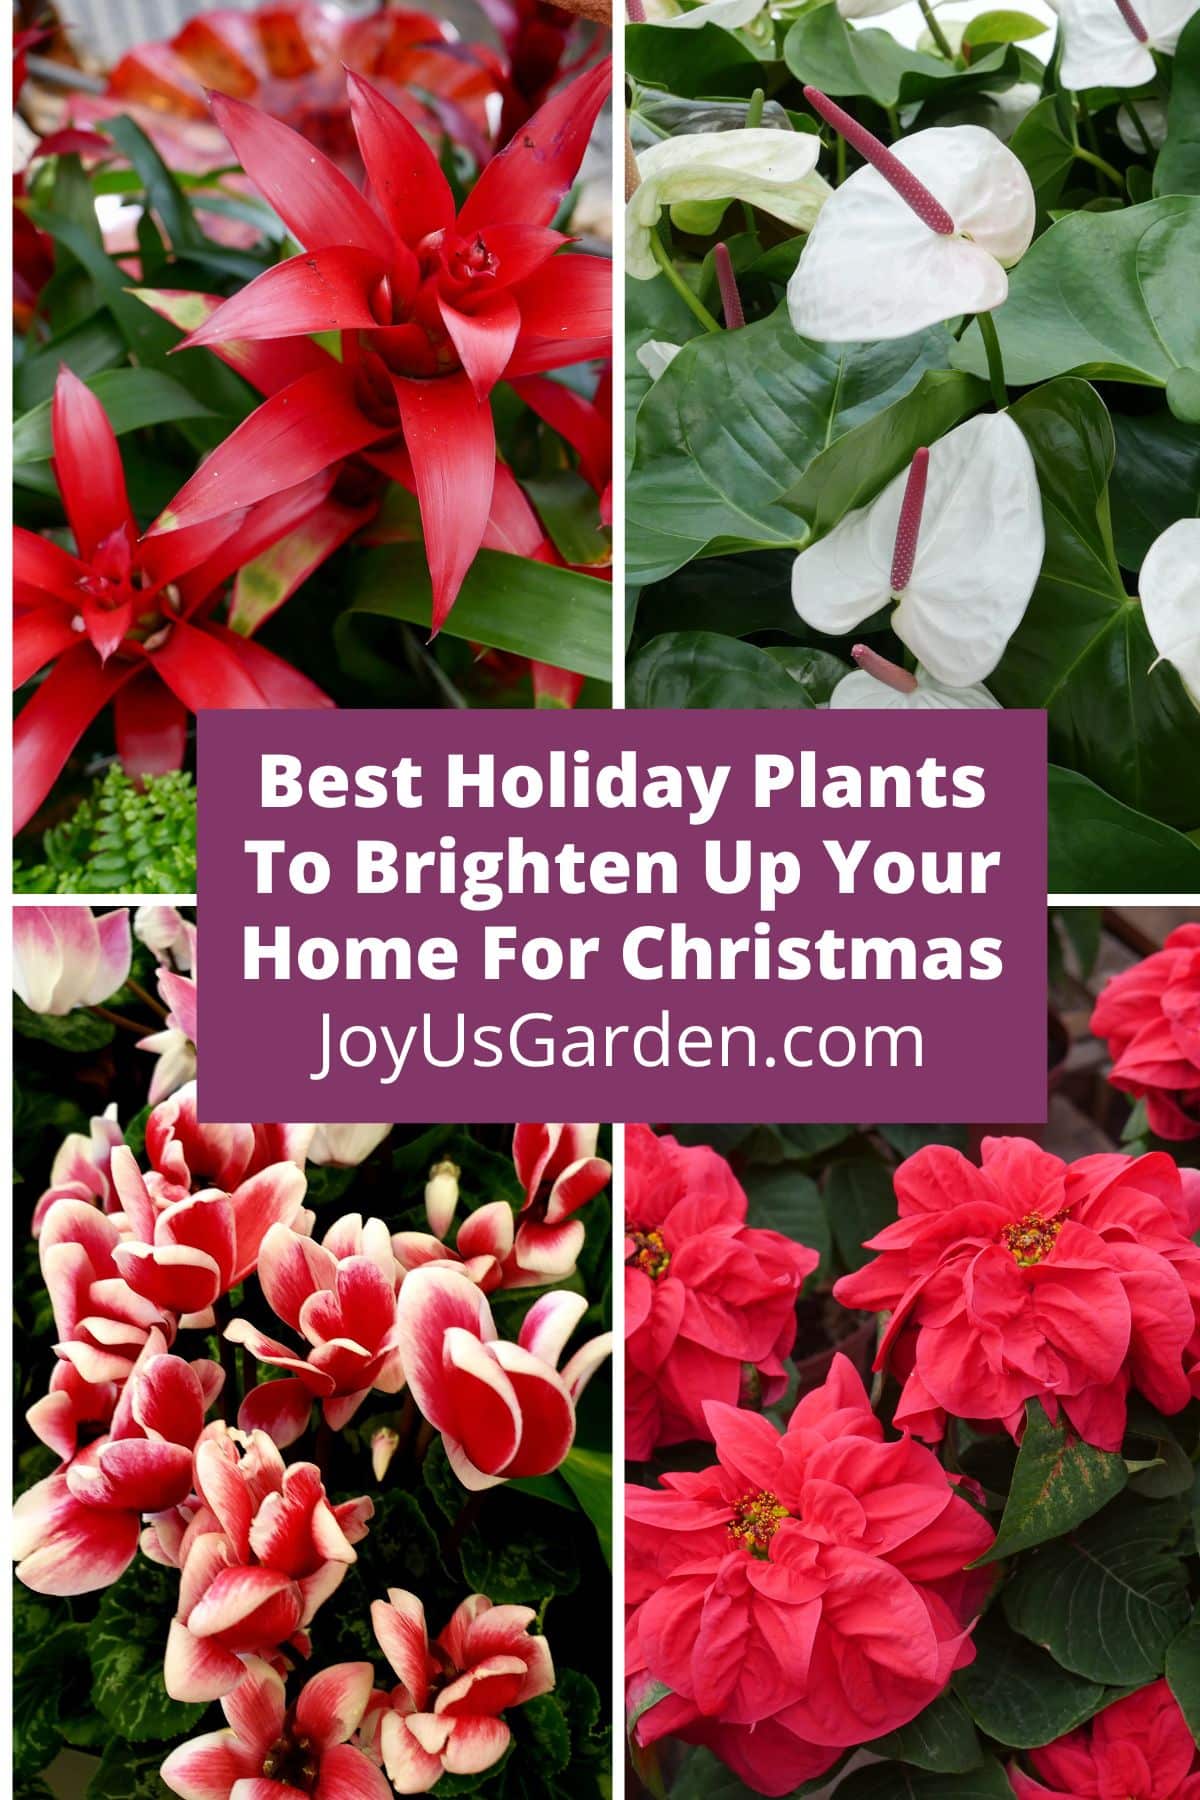  12 најбољих празничних биљака за улепшавање вашег дома за Божић